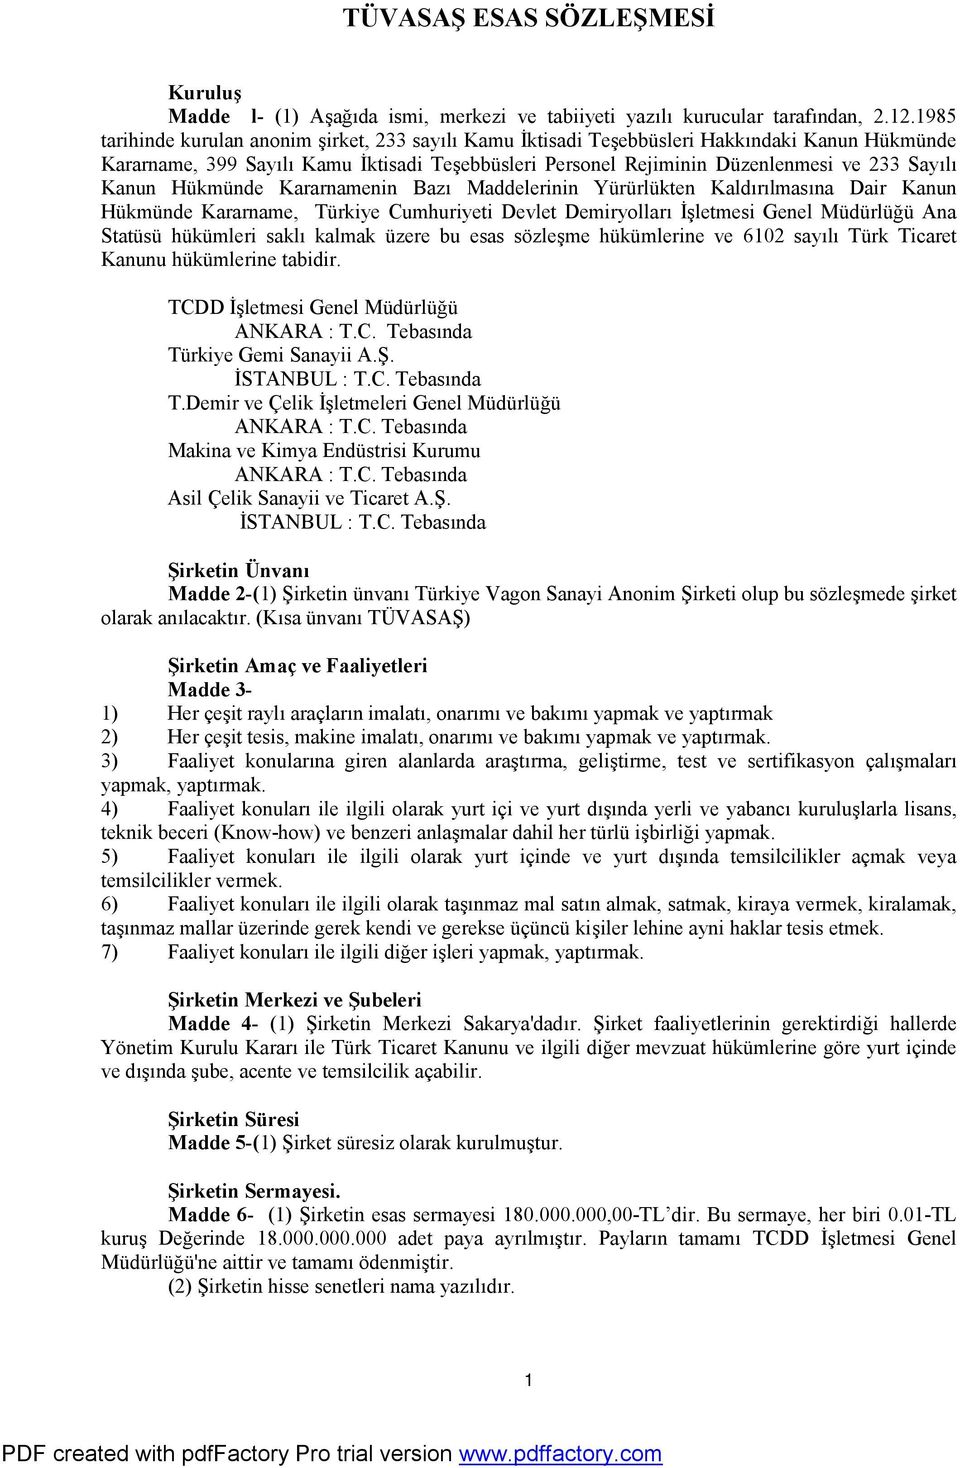 Kanun Hükmünde Kararnamenin Bazı Maddelerinin Yürürlükten Kaldırılmasına Dair Kanun Hükmünde Kararname, Türkiye Cumhuriyeti Devlet Demiryolları İşletmesi Genel Müdürlüğü Ana Statüsü hükümleri saklı